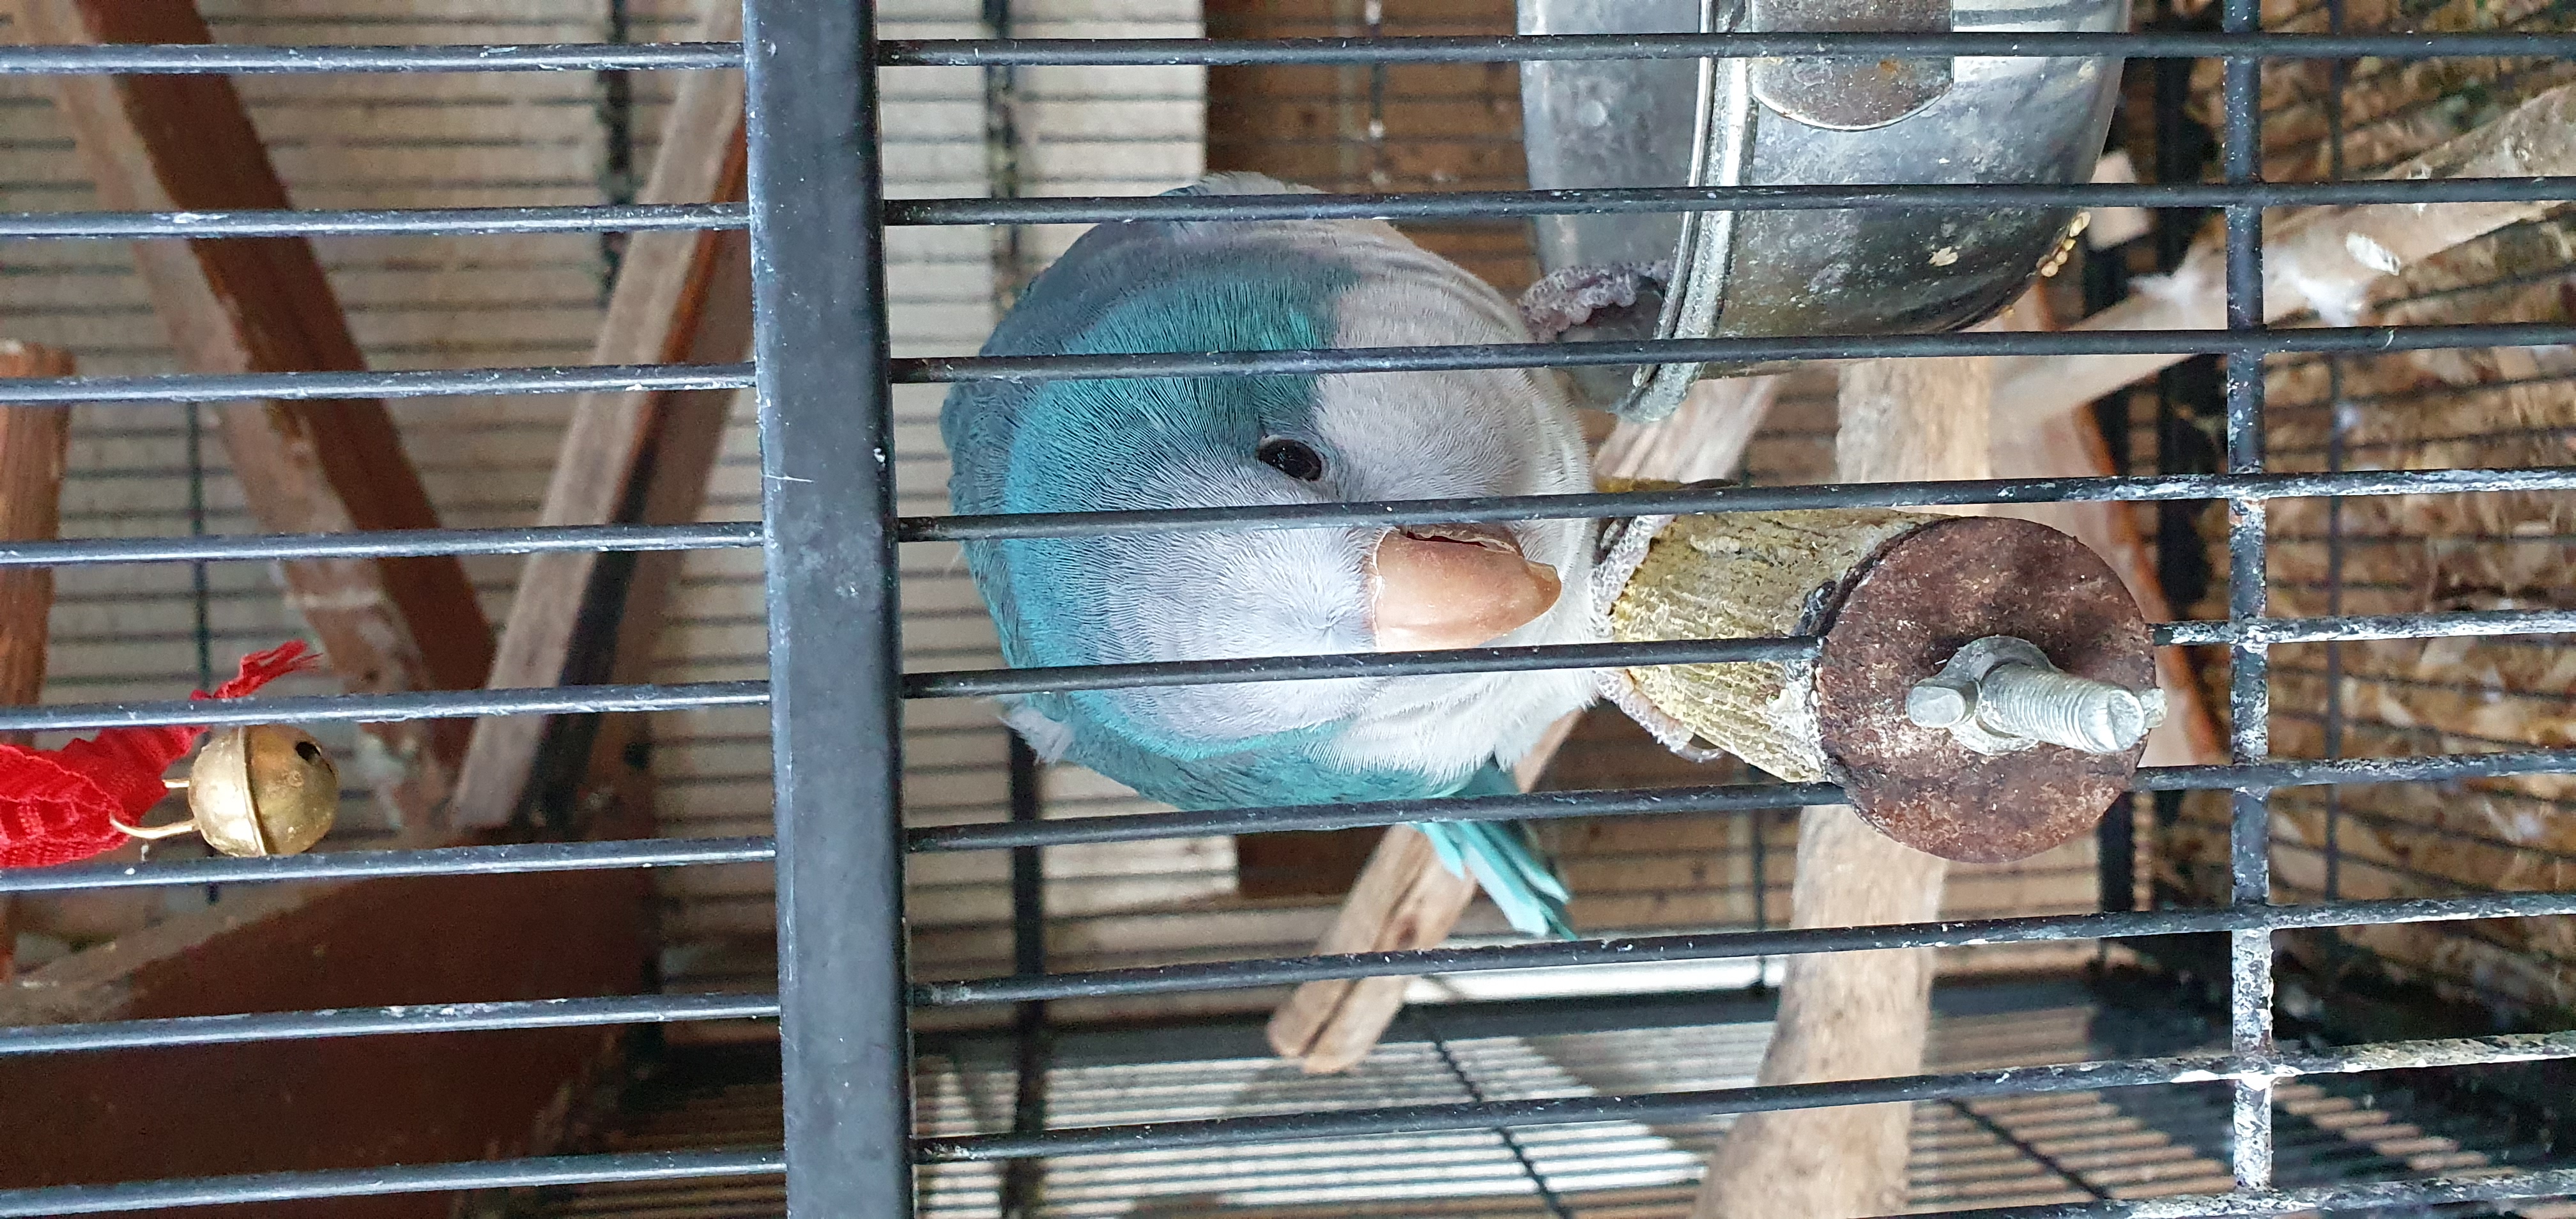 Male quaker parrot